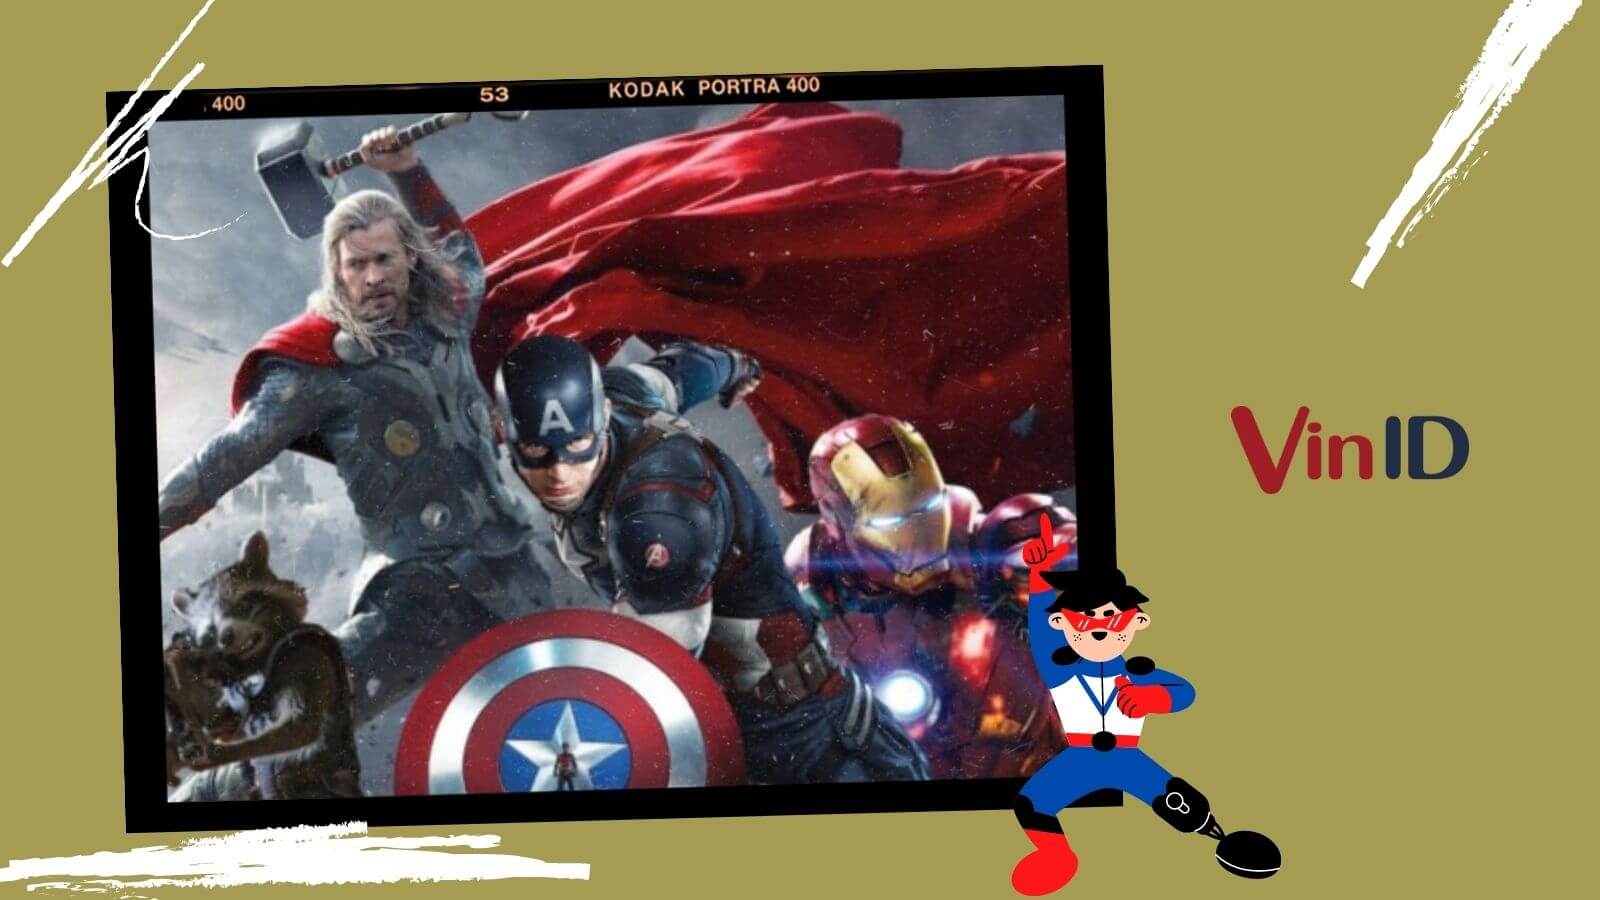 Mê Marvel chắc chắn không thể bỏ qua cơ hội được tận hưởng trọn bộ các bộ phim Marvel từ đầu đến cuối. Đặt chân đến rạp chiếu phim ngay hôm nay để theo chân những siêu anh hùng yêu dấu của mình - Iron Man, Captain America, Thor và nhiều người khác!